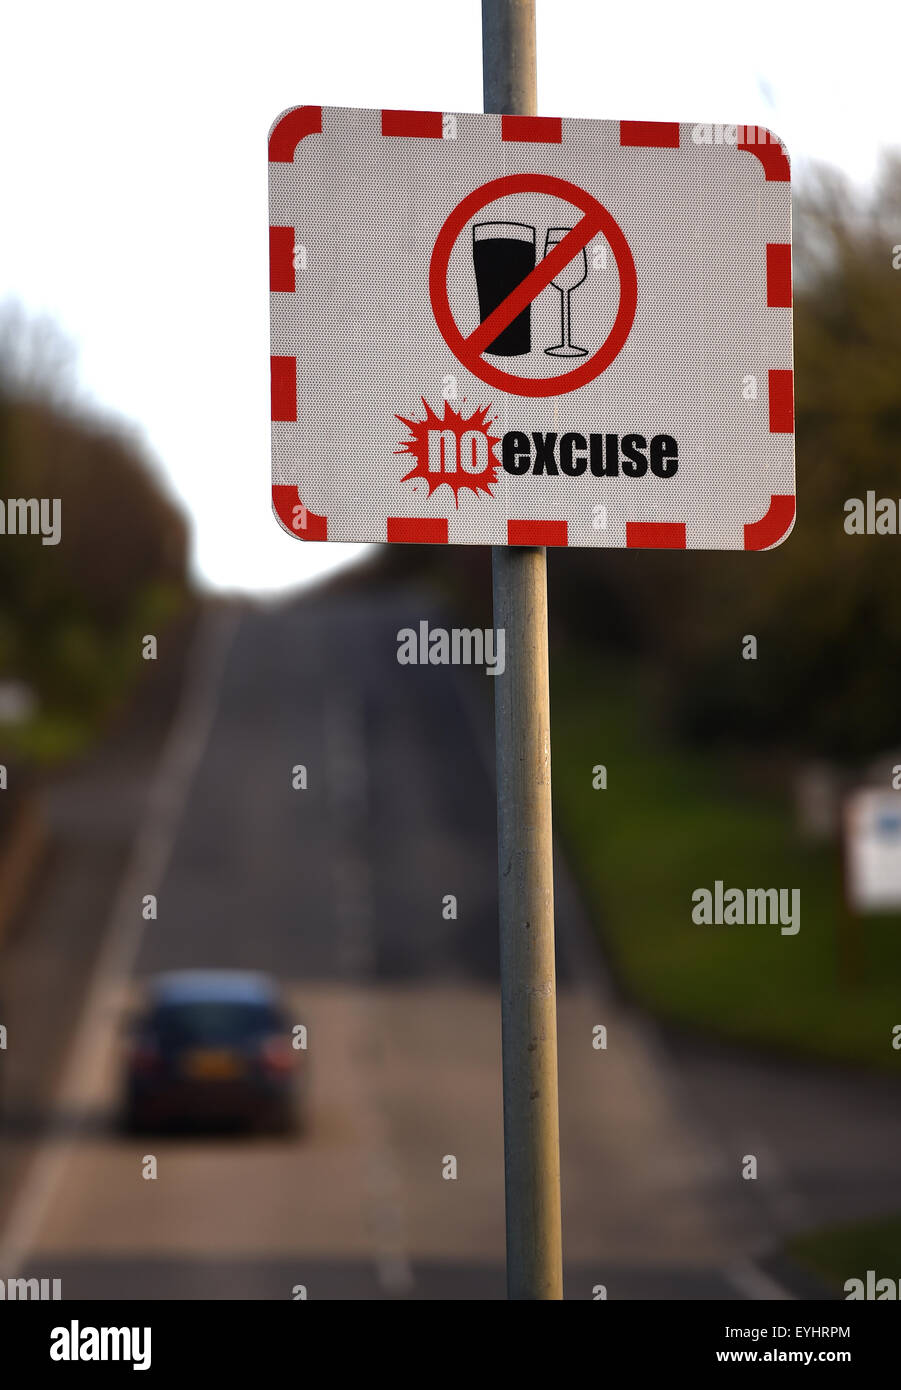 Alkohol am Steuer Schild, keine Entschuldigung Kampagne gegen Alkohol am Steuer in Großbritannien Stockfoto